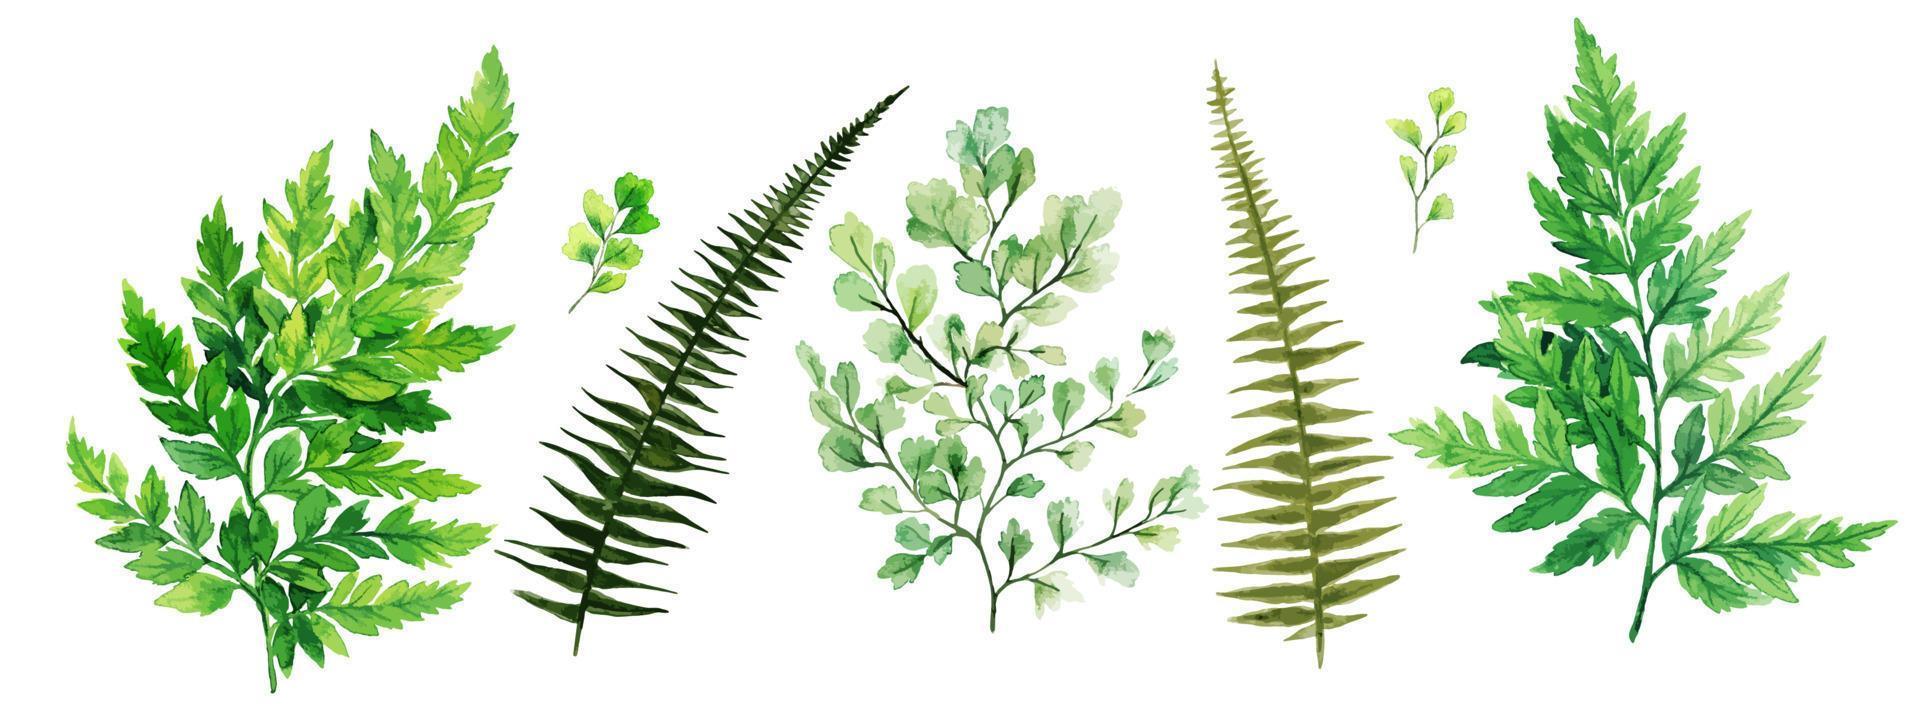 flora silvestre, helechos y adiantum, colección de vegetación brillante acuarela, ilustración vectorial dibujada a mano. vector